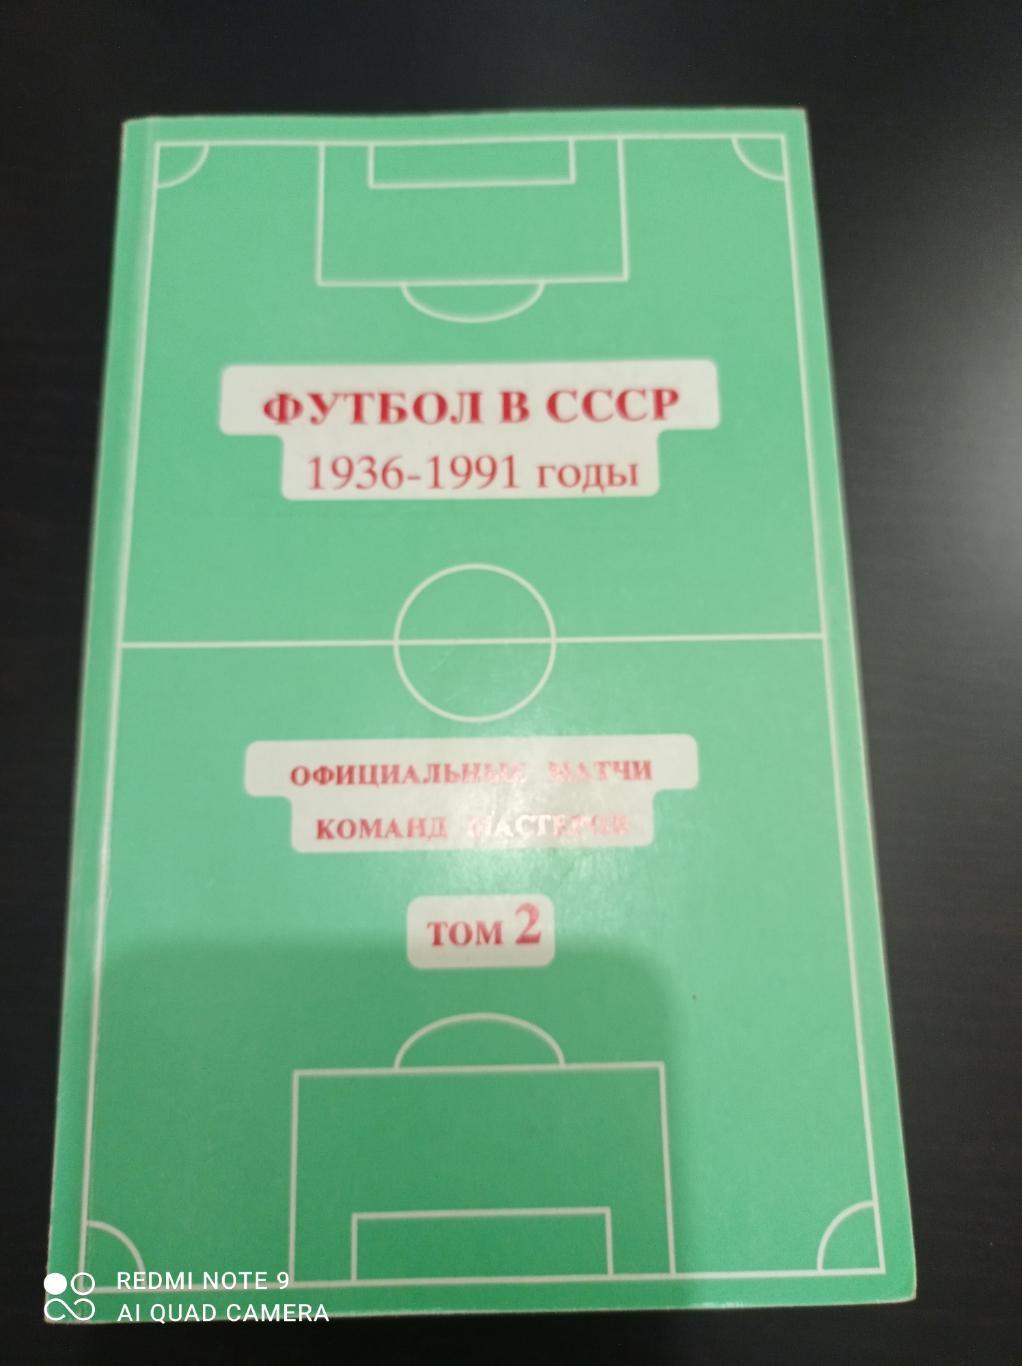 Футбол в СССР том 2